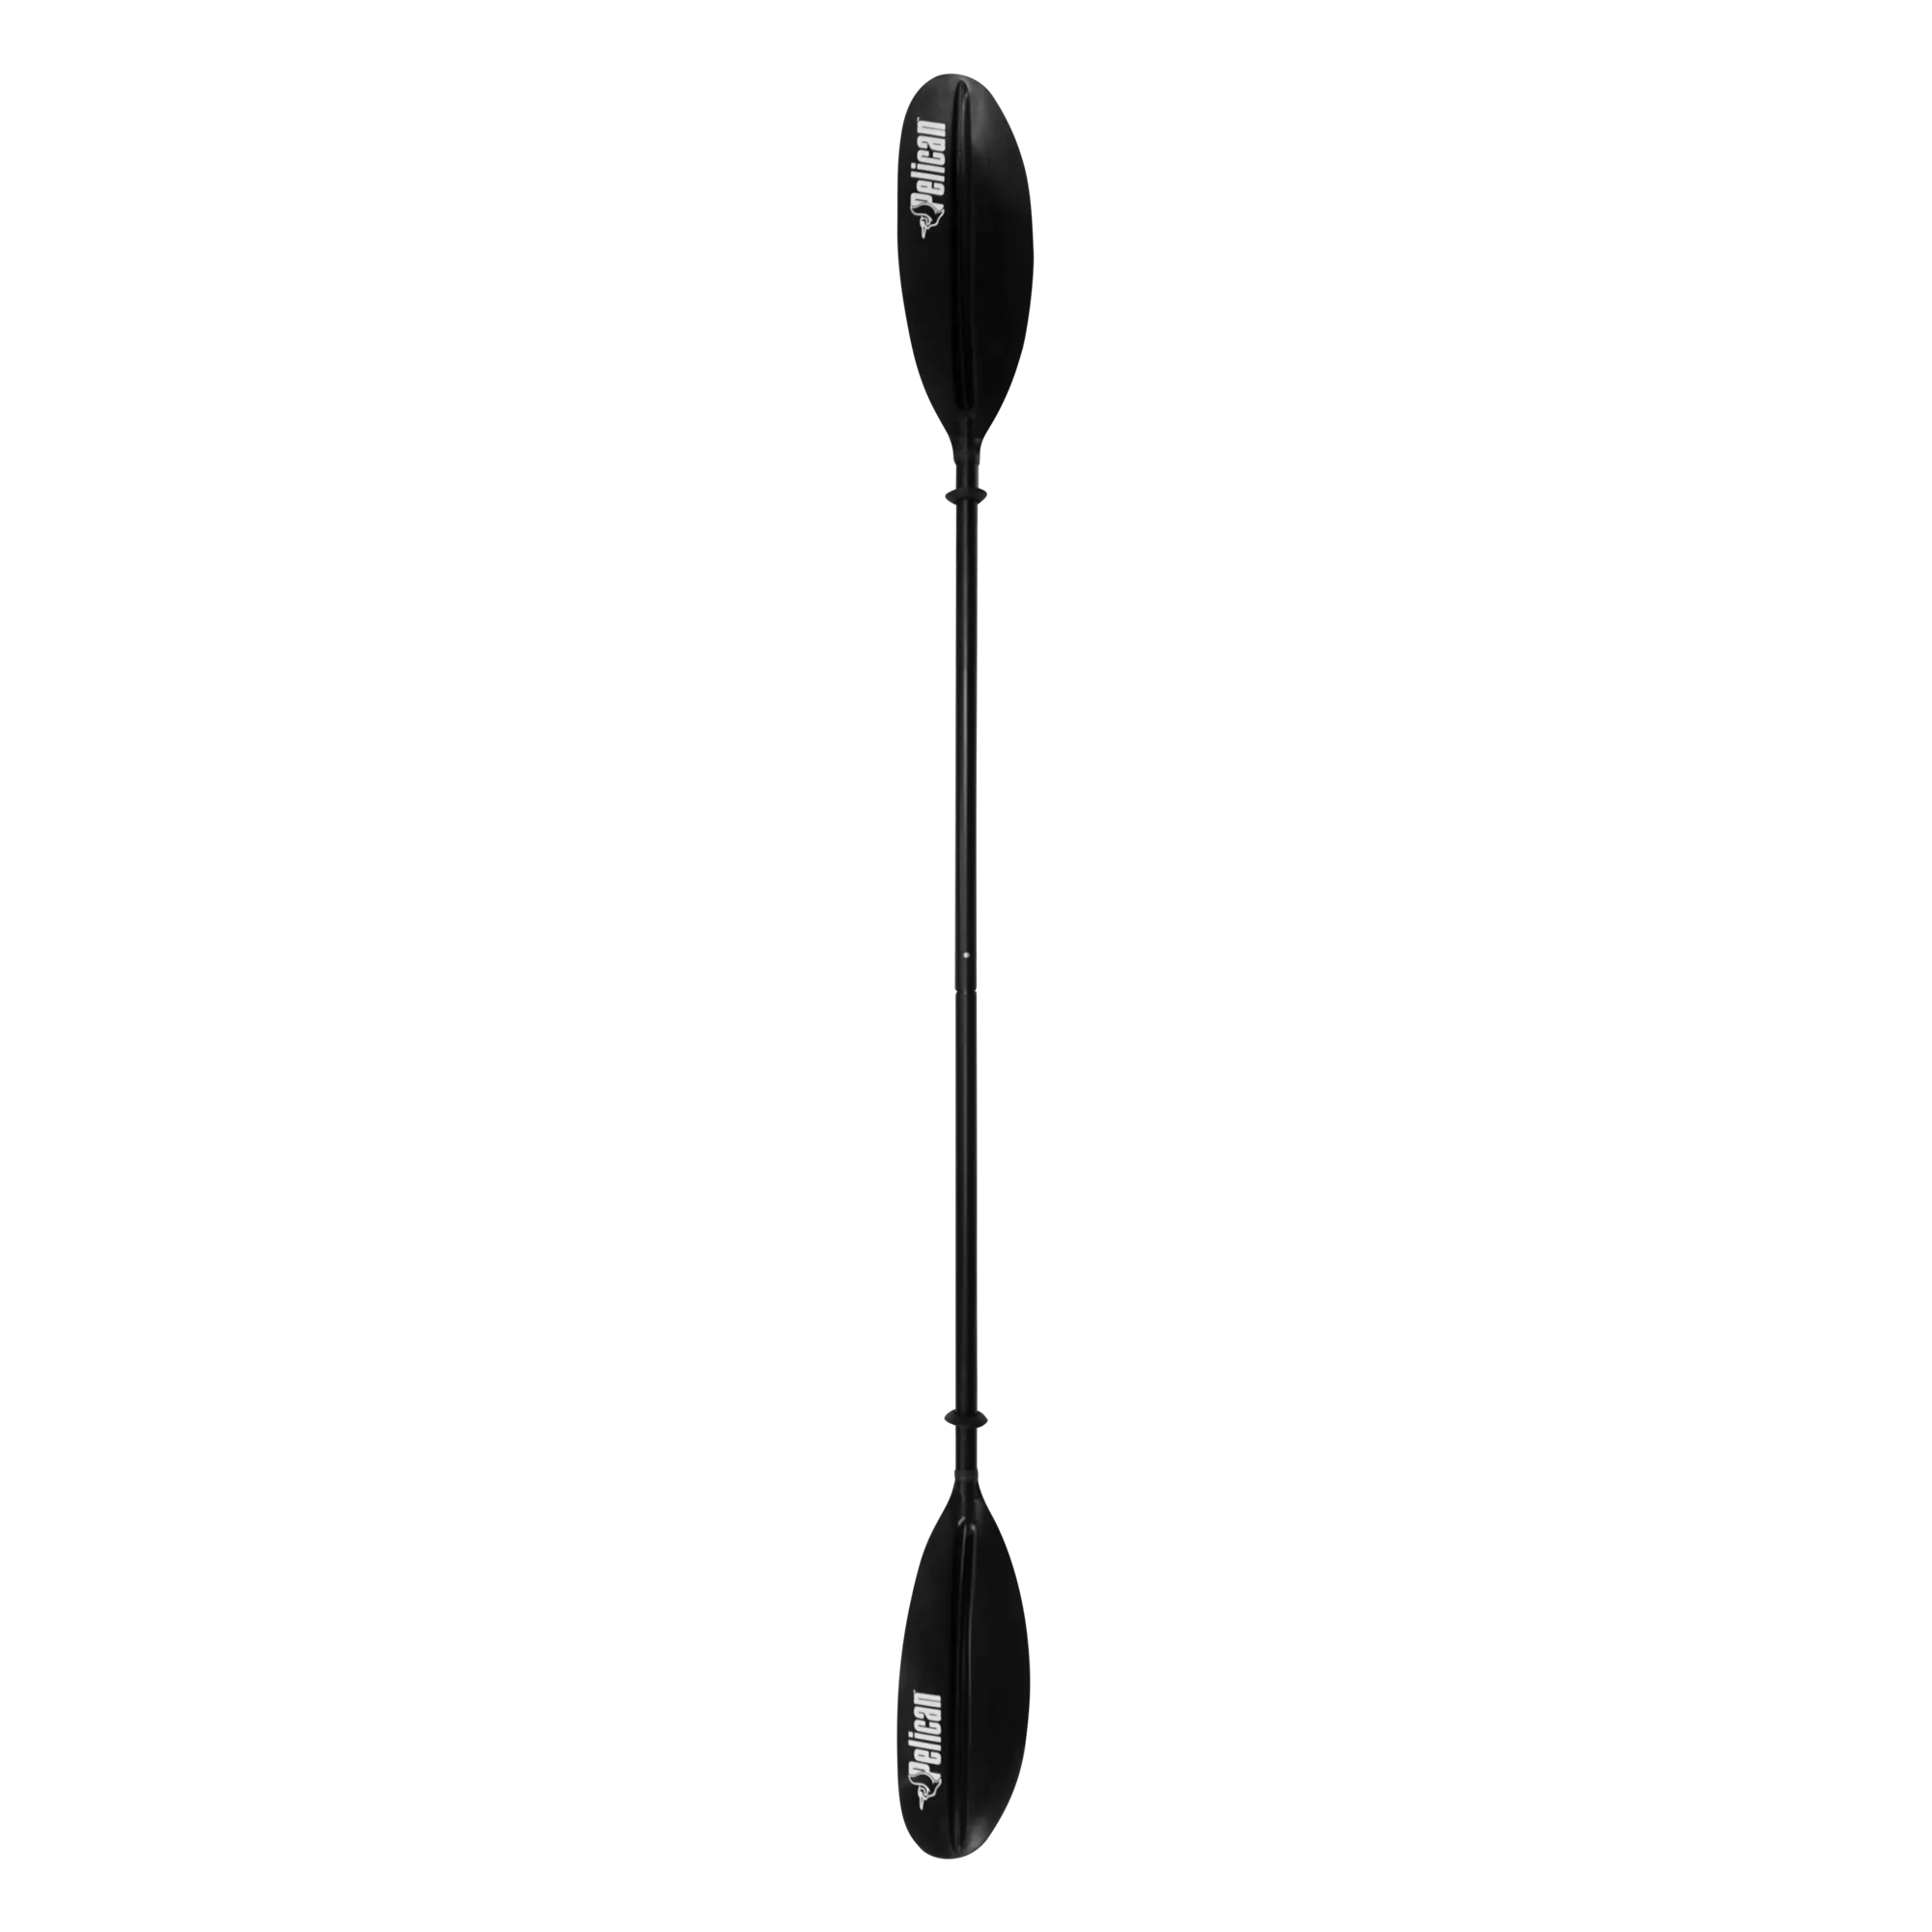 PELICAN - Pagaie de kayak standard de 220 cm (87 po) - Black - PS1965-00 - TOP